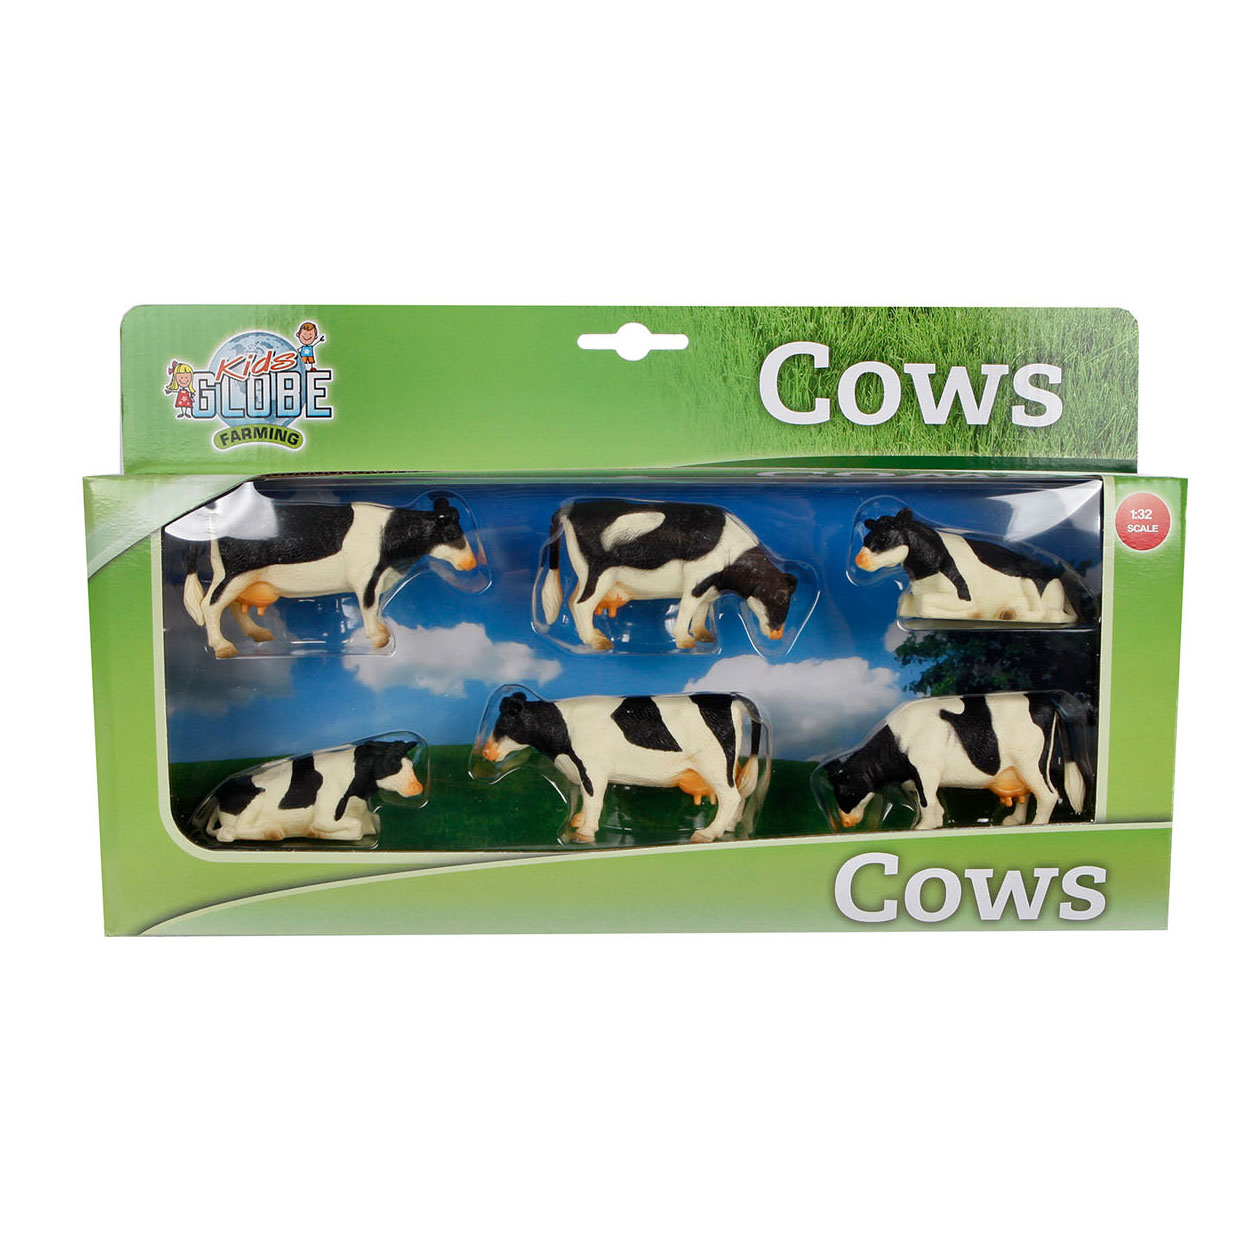 Kids Globe 571873 Bauernhoftier Kühe 2 Stück 1:32 stehend Blitzversand per DHL 